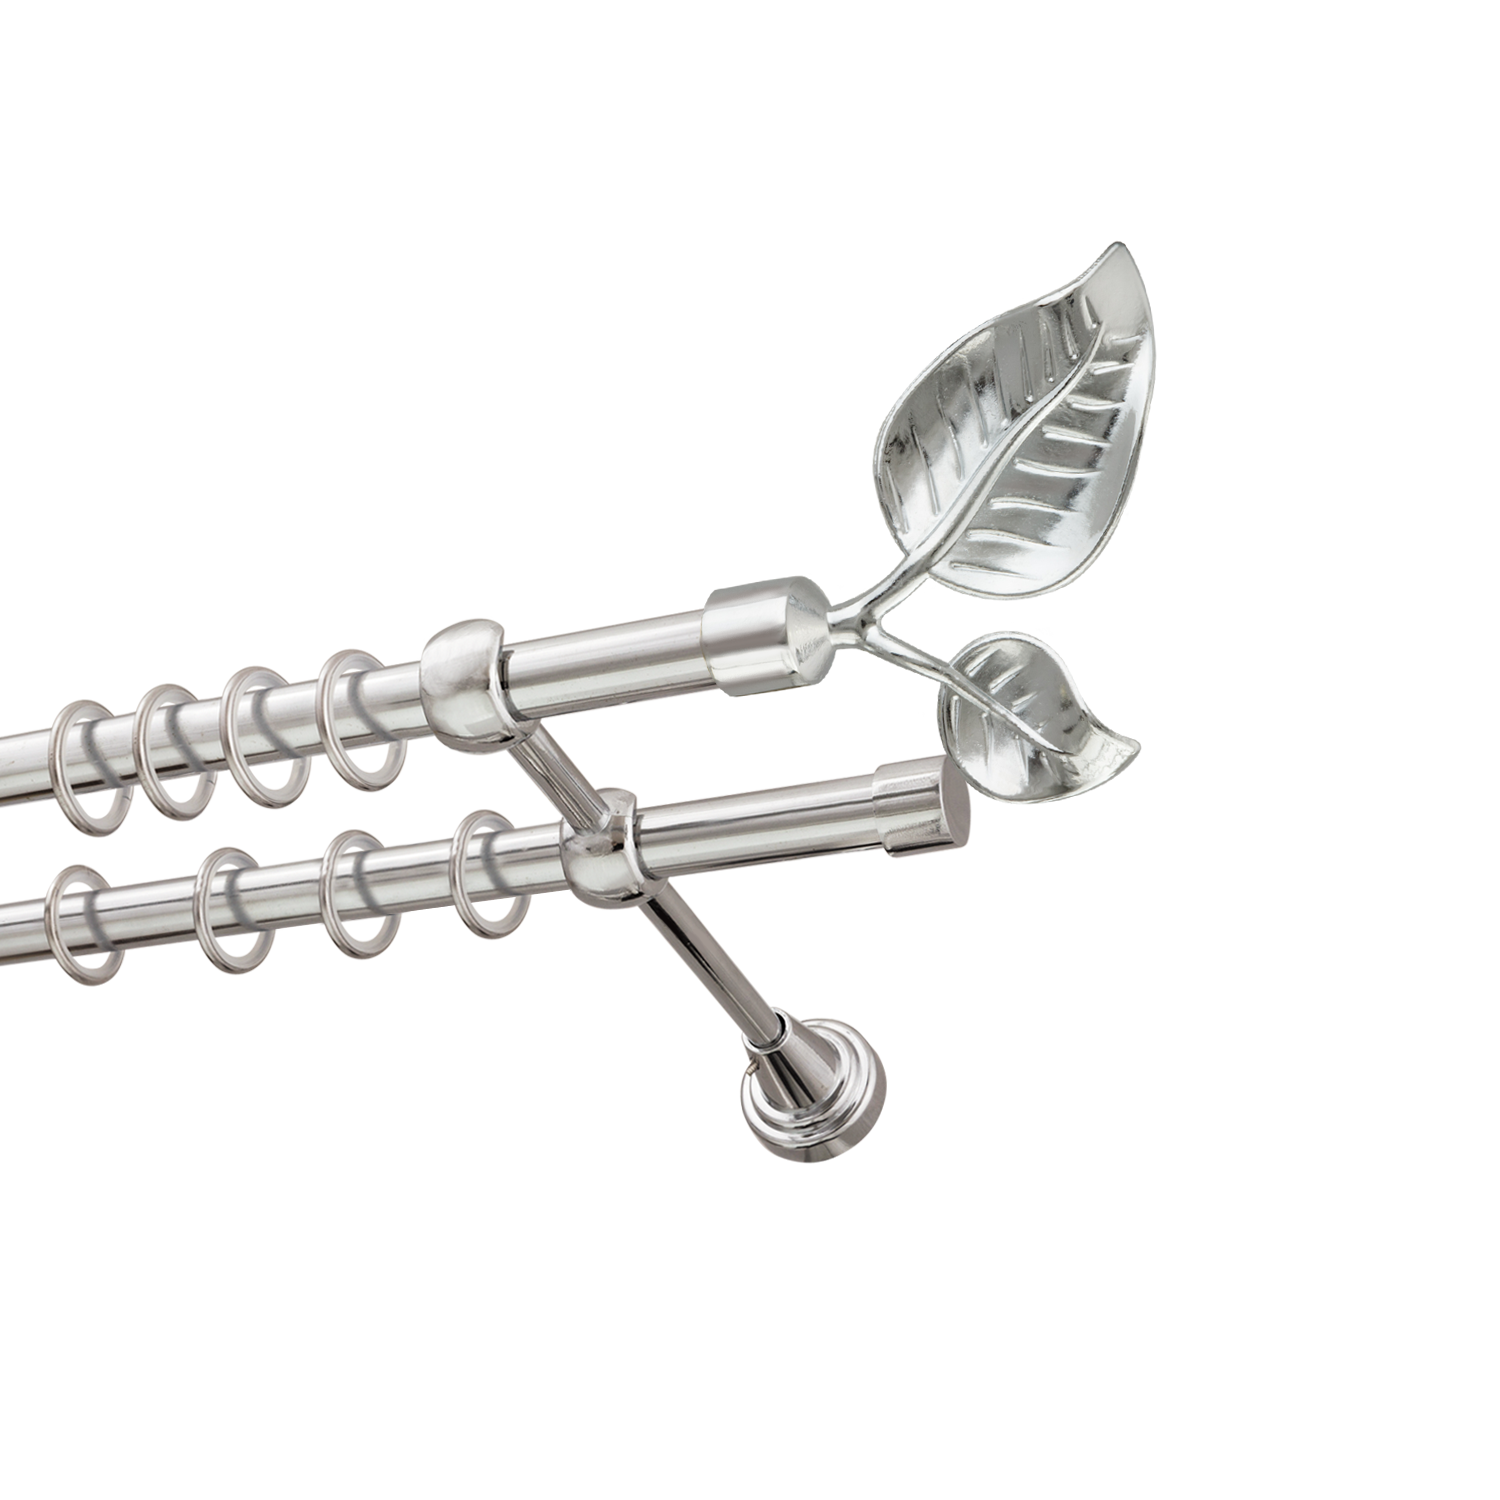 Металлический карниз для штор Тропик, двухрядный 16/16 мм, серебро, гладкая штанга, длина 180 см - фото Wikidecor.ru